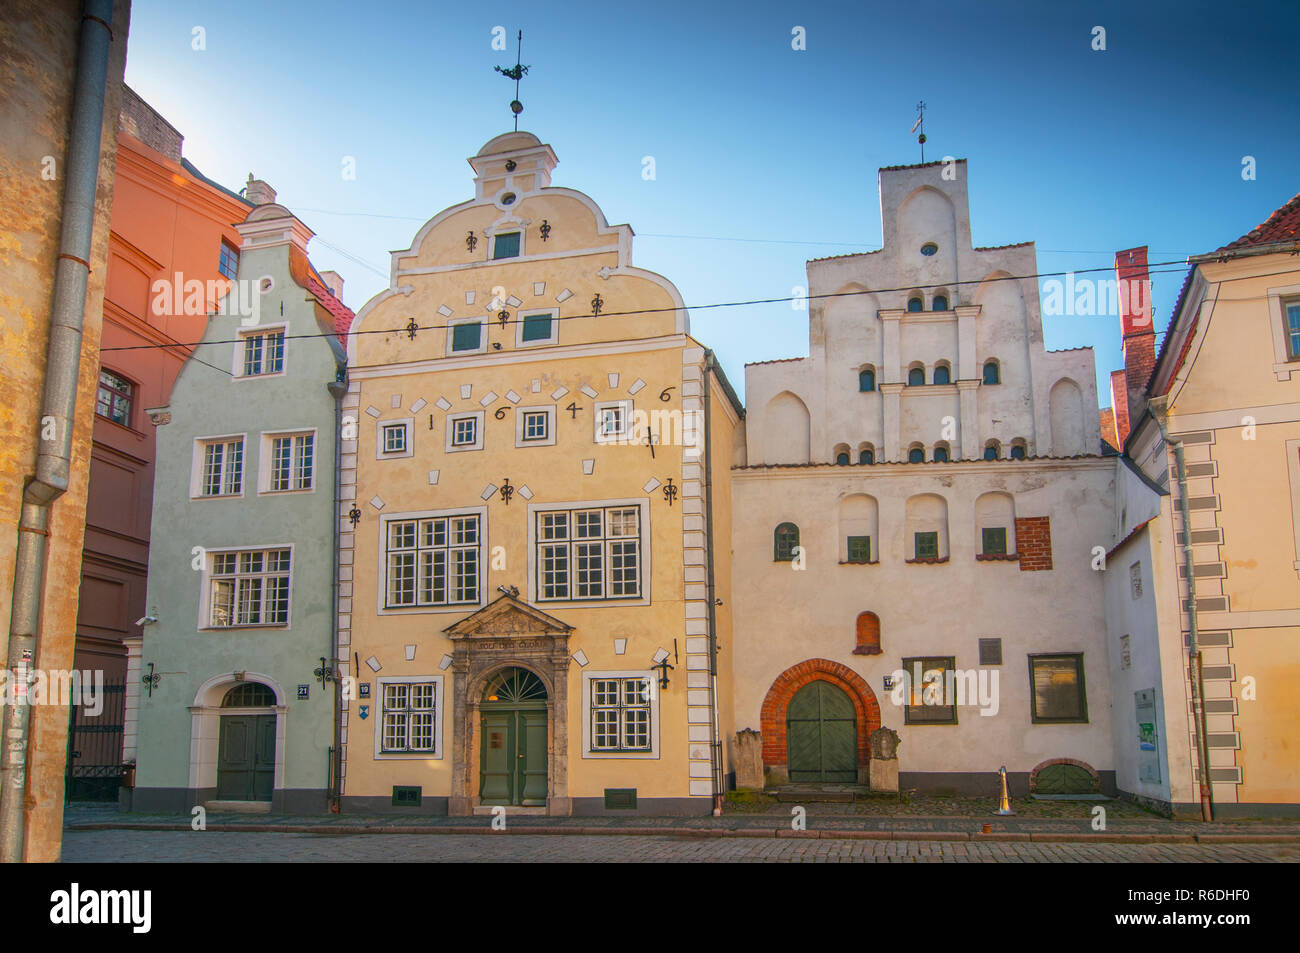 Drei Brüder, ein Cluster von mittelalterlichen Häusern in der Altstadt Riga Lettland Stockfoto